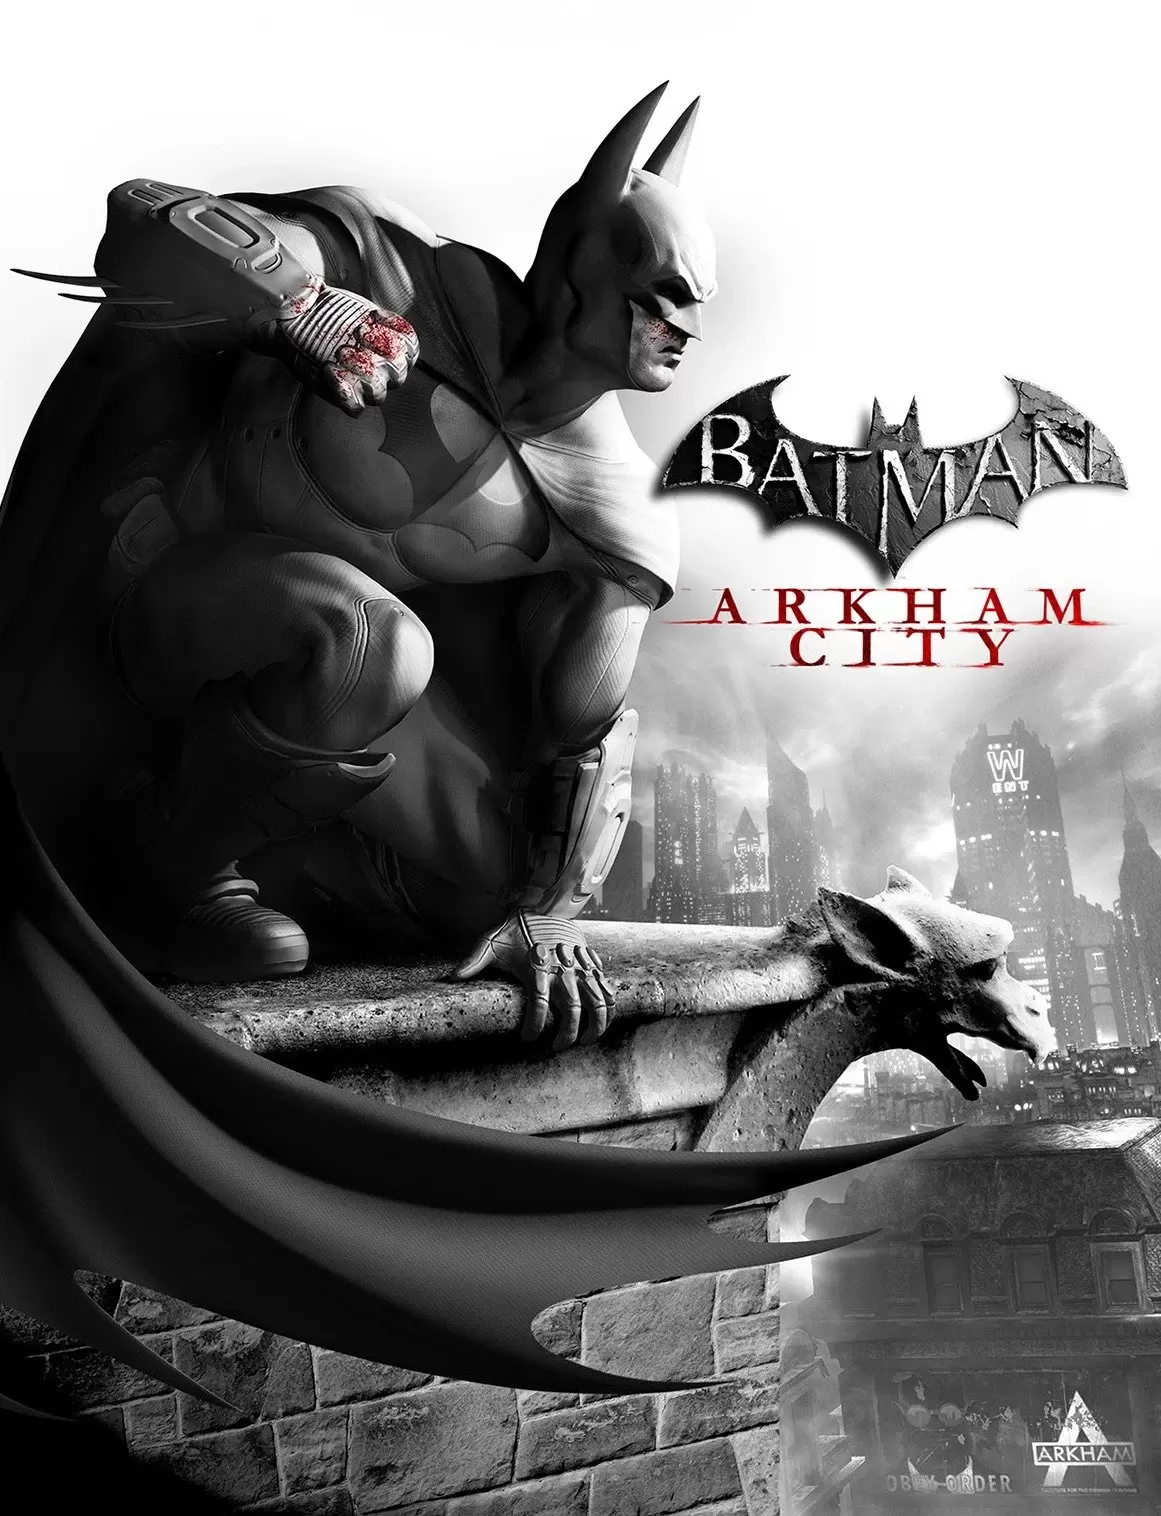  دانلود بازی Batman: Arkham City برای کامپیوتر